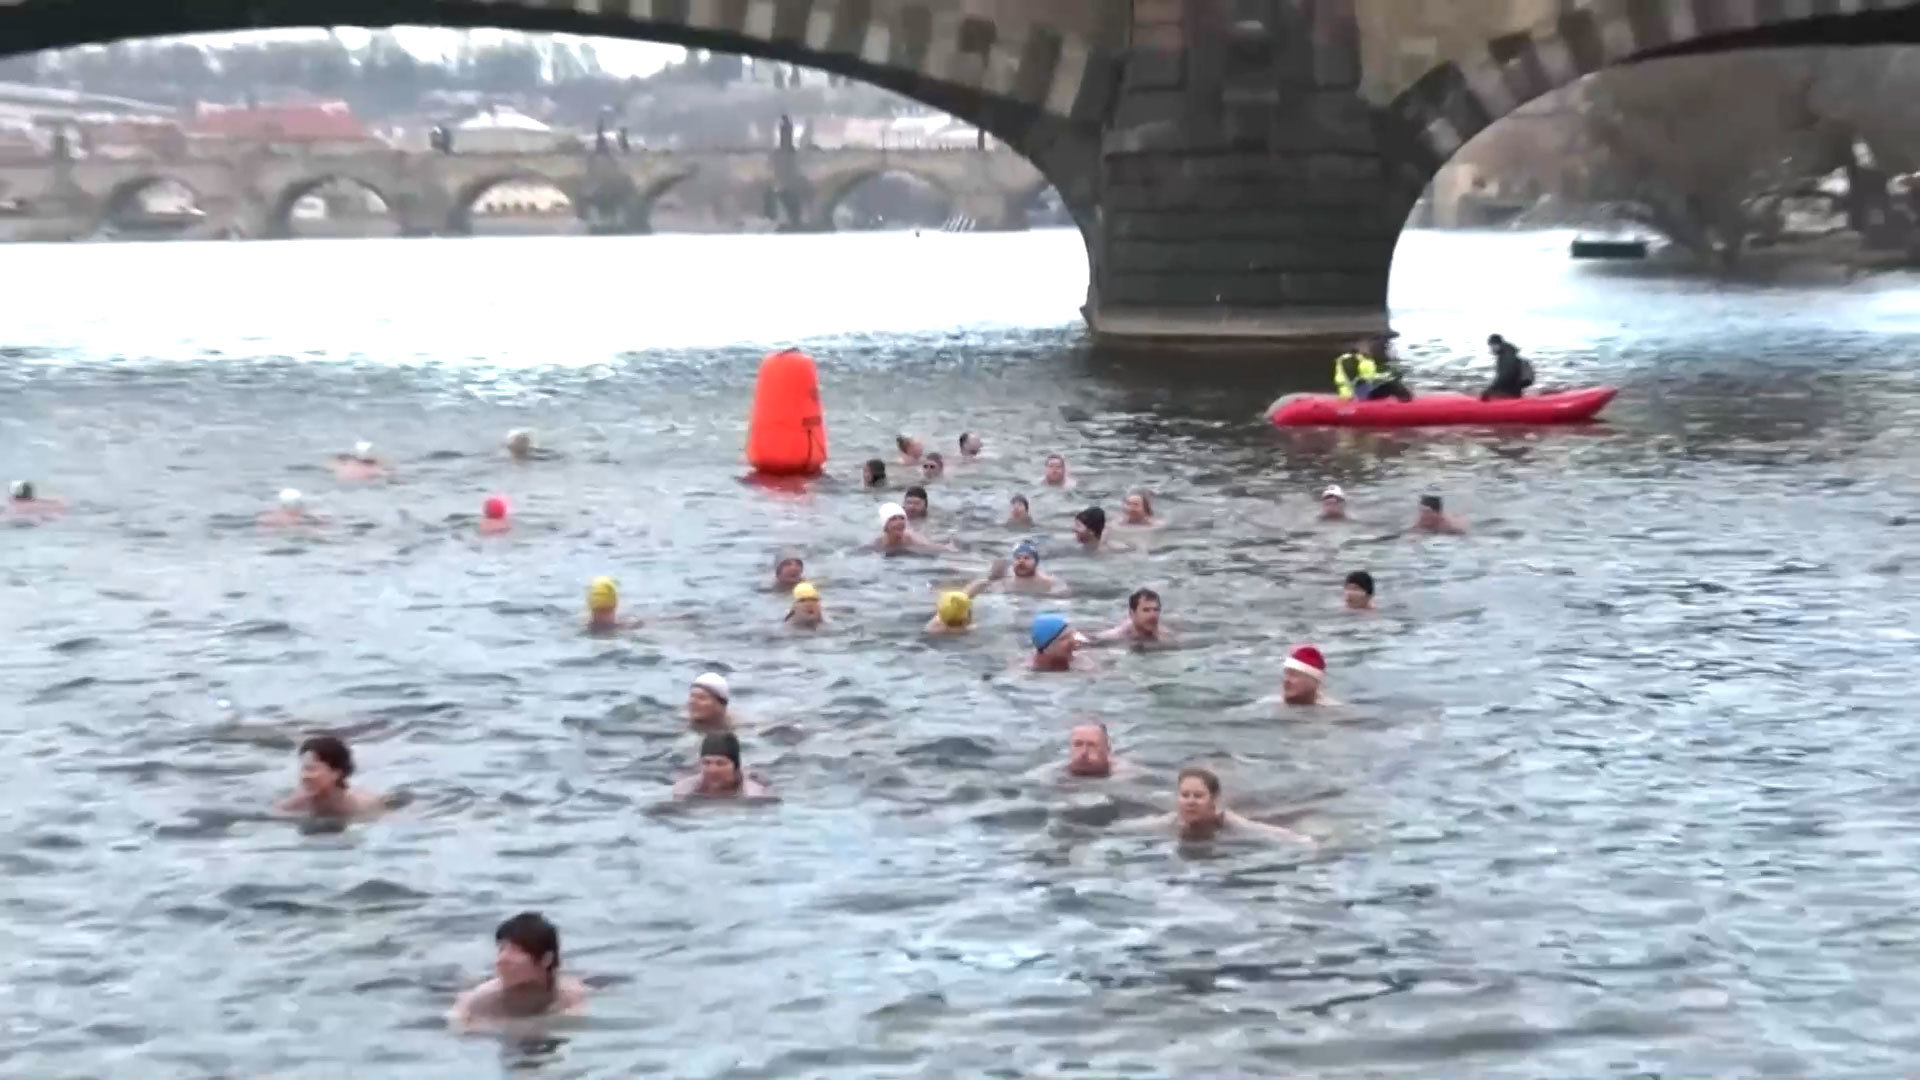 Hàng trăm người thi bơi qua sông lạnh cóng, nhiệt độ âm 3 độ C